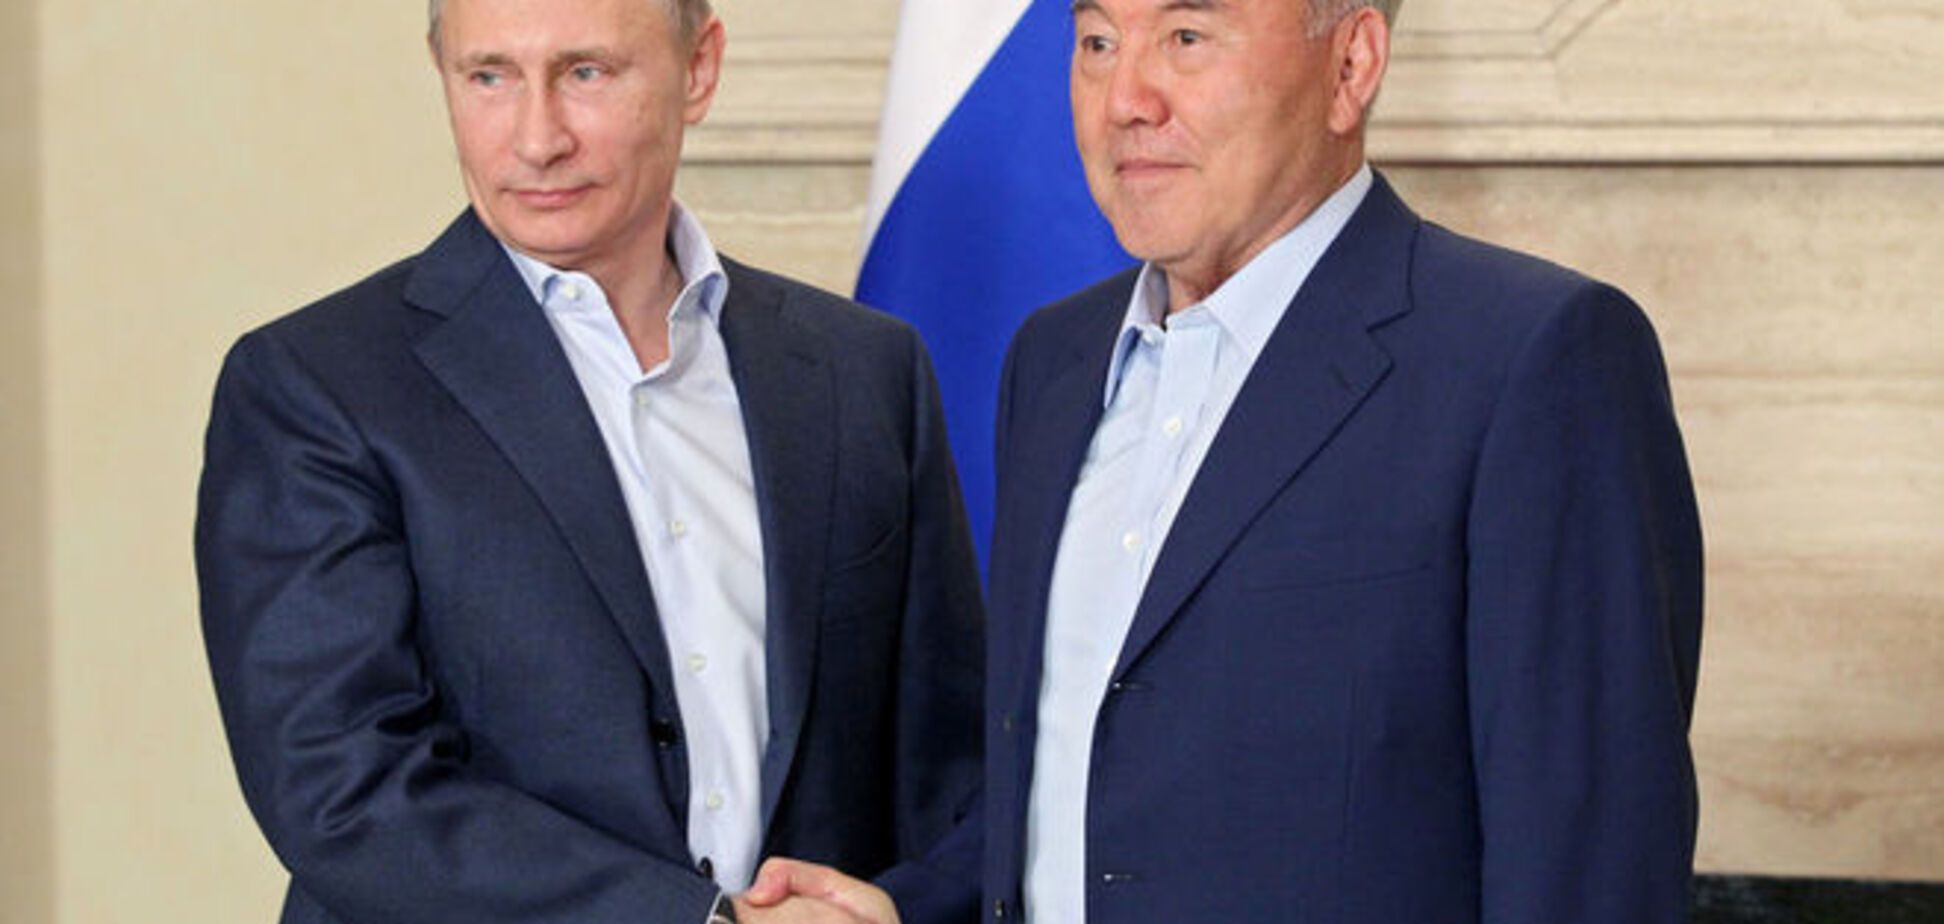 Сюрприз для Путина? В РФ раскрыли неожиданный 'маневр' Назарбаева